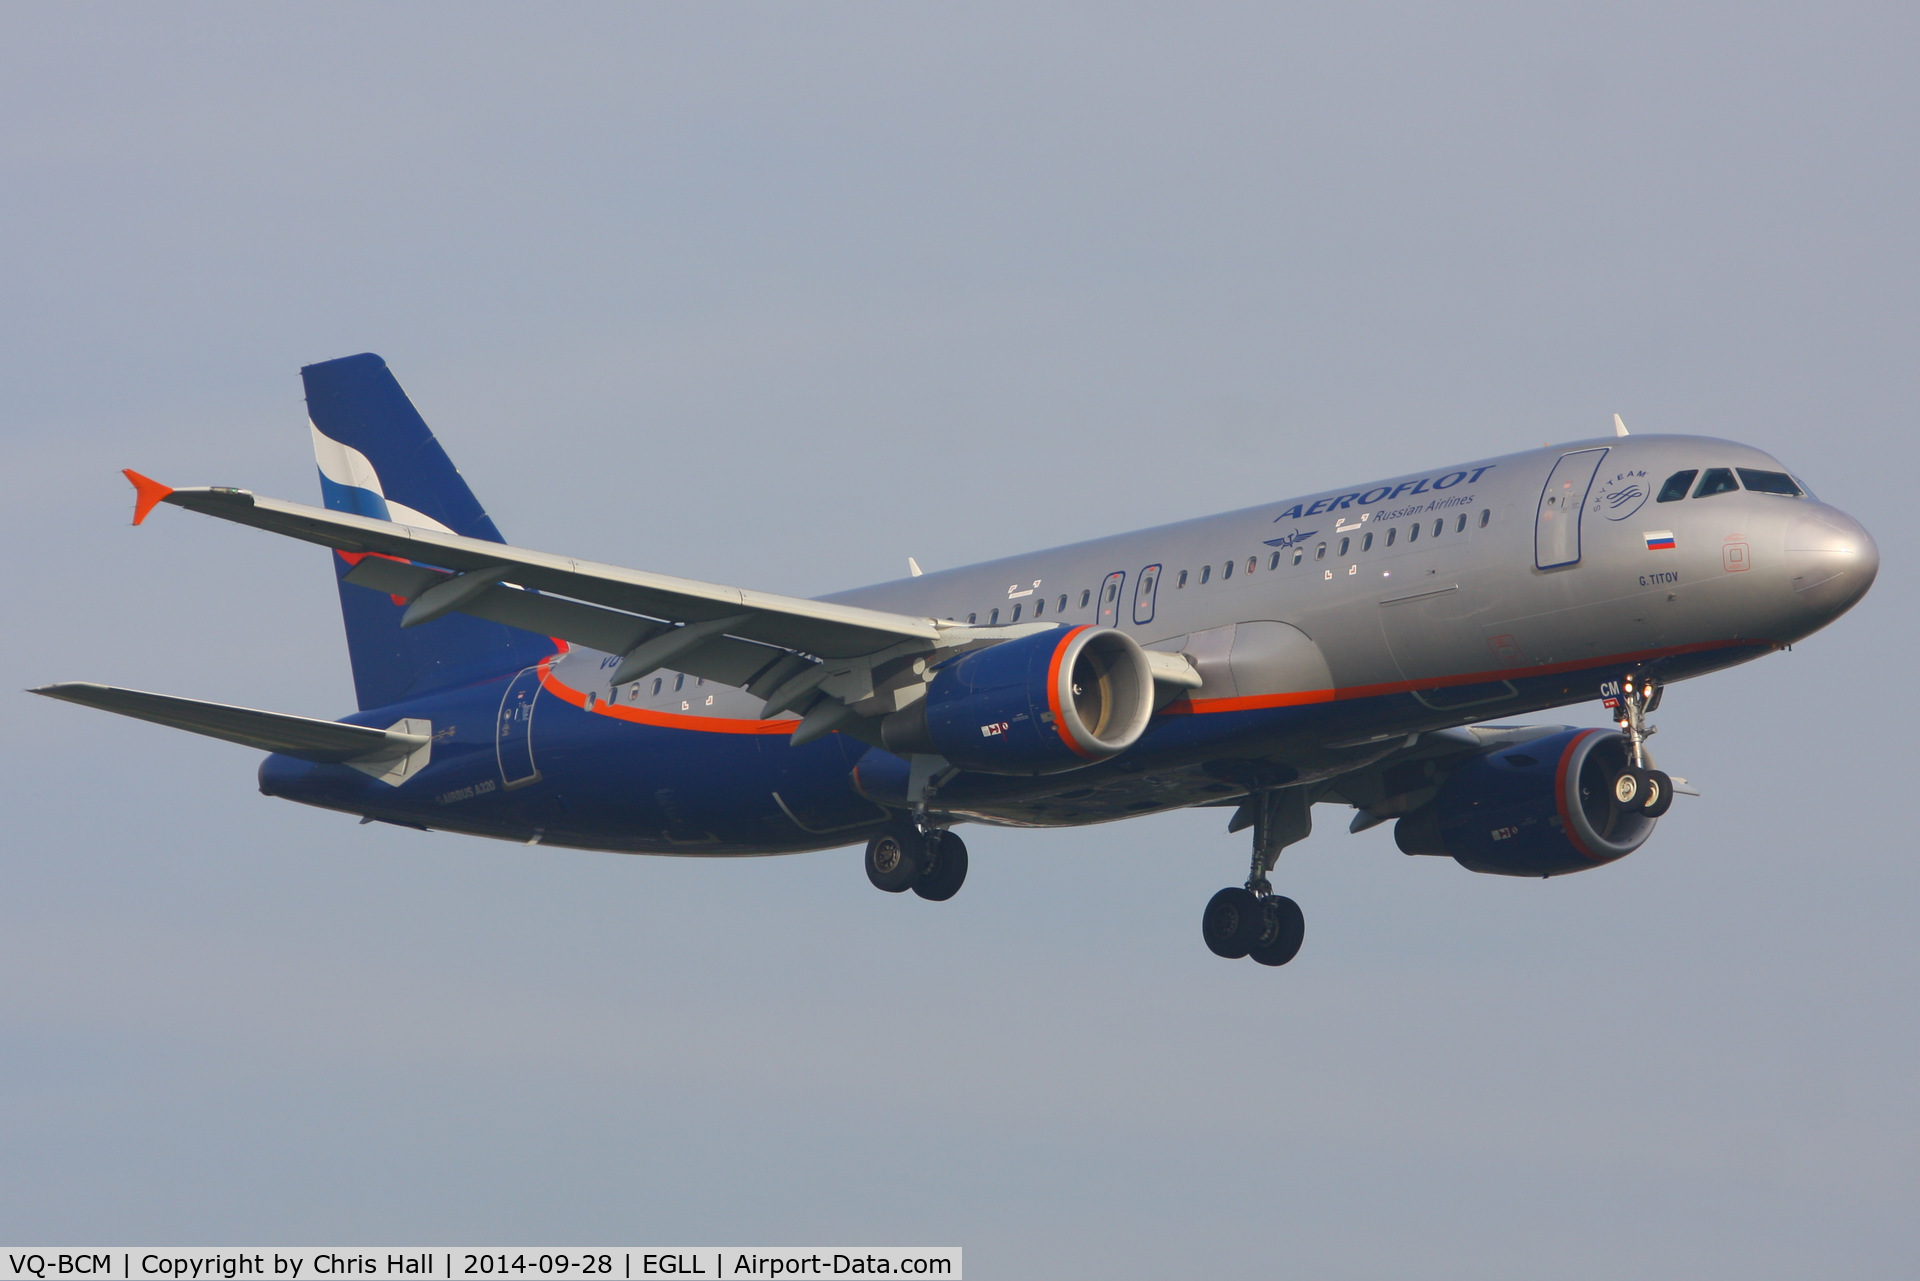 VQ-BCM, 2009 Airbus A320-214 C/N 3923, Aeroflot - Russian Airlines